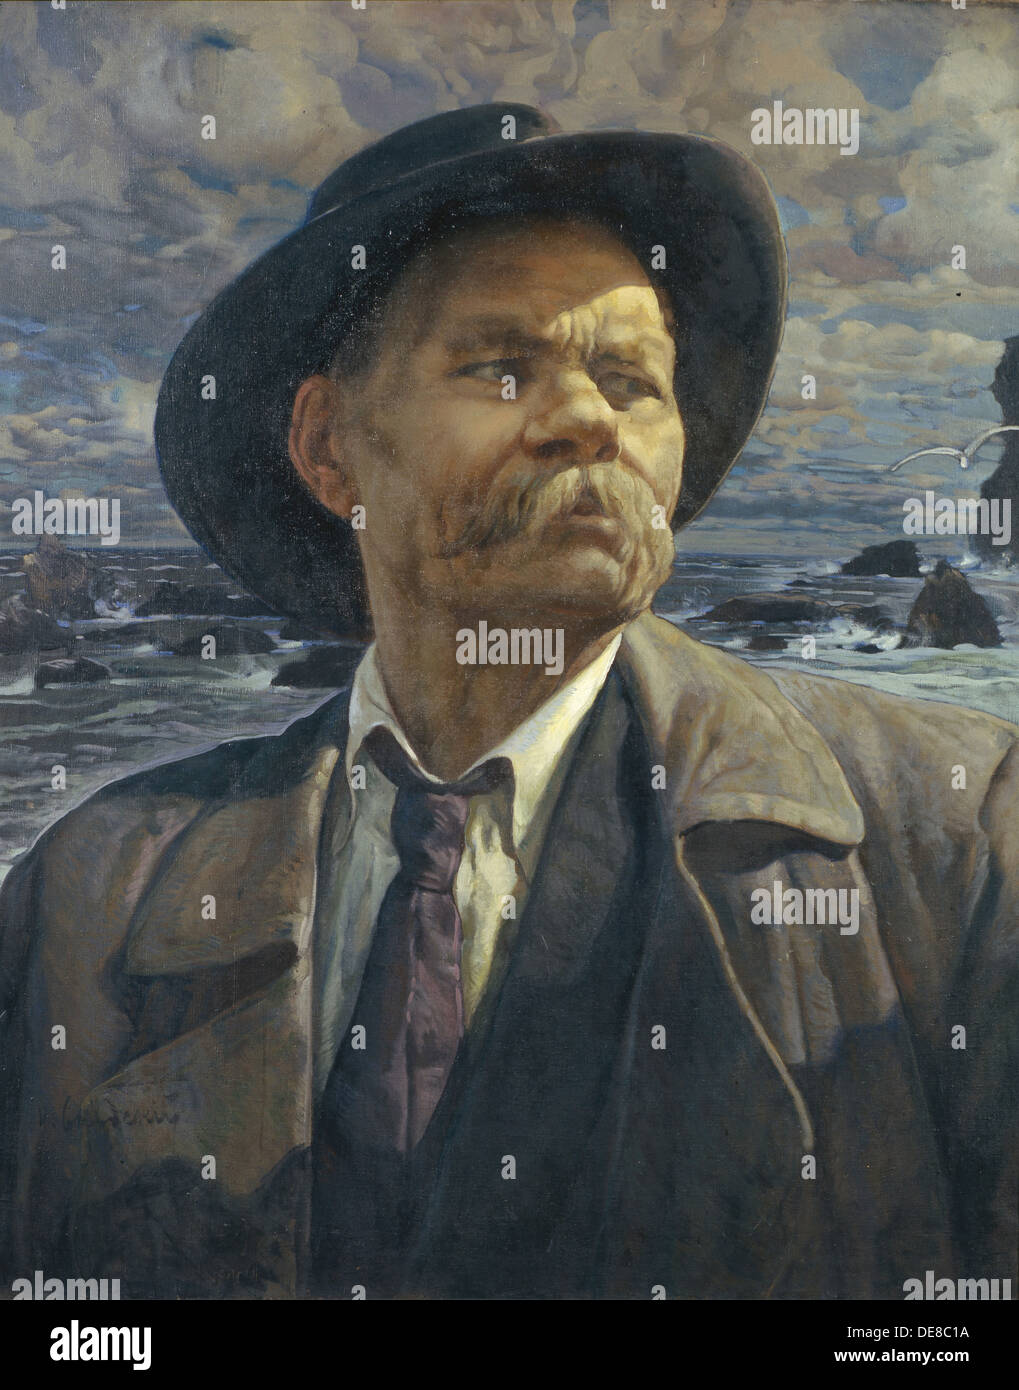 Retrato del autor Maxim Gorki (1868-1939), 1936. Artista: Brodsky, Isaak Izrailevich (1884-1939) Foto de stock